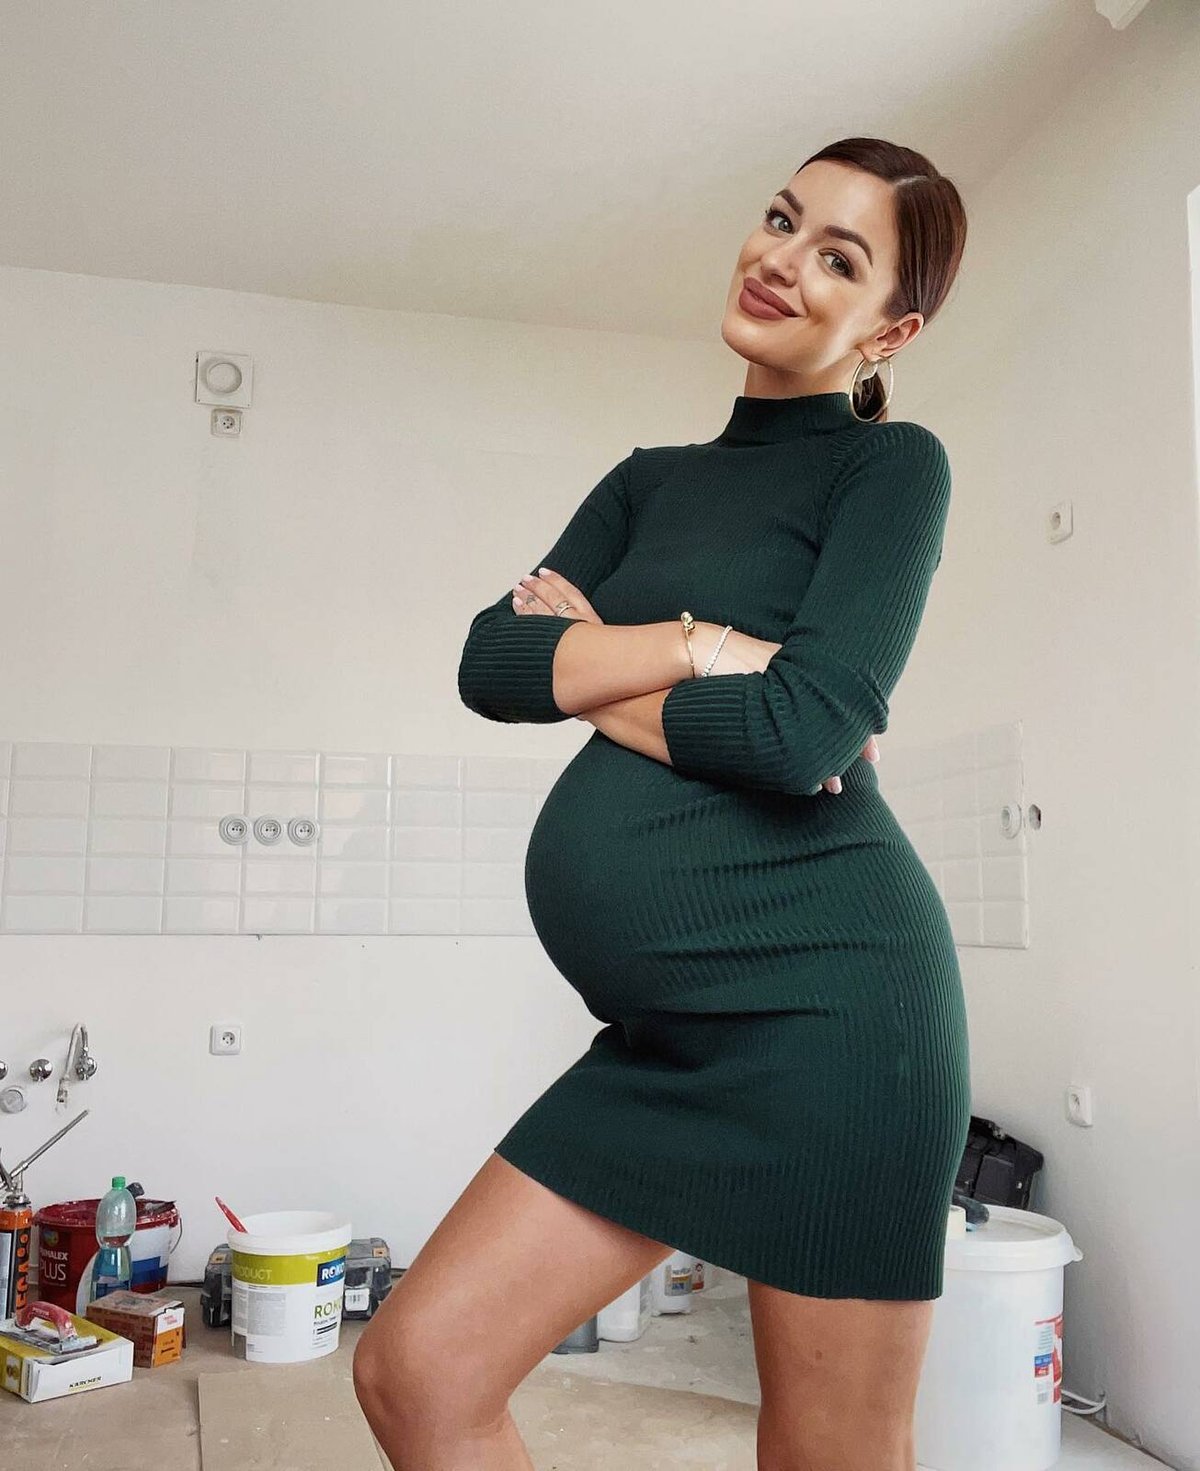 Těhotná Jitka Boho těsně před porodem.